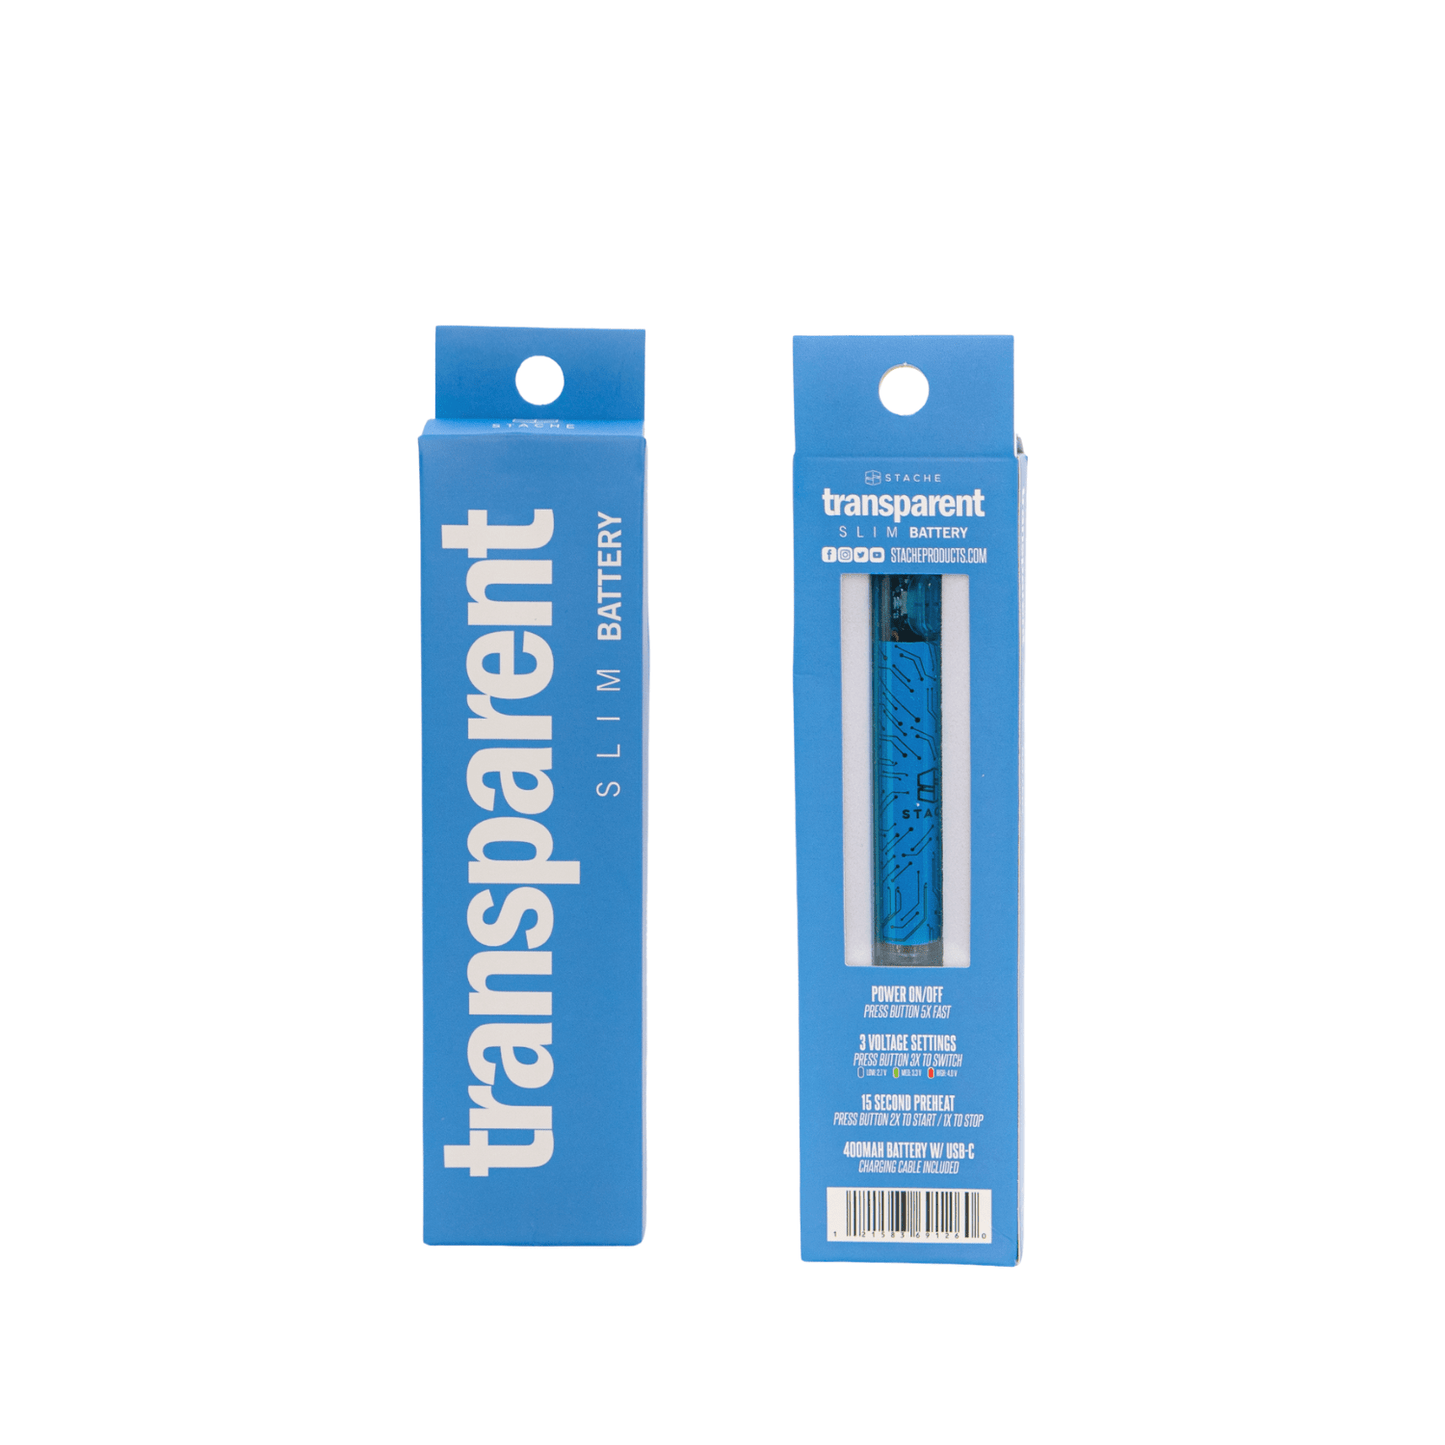 Blue Stache - Transparent 510 battery